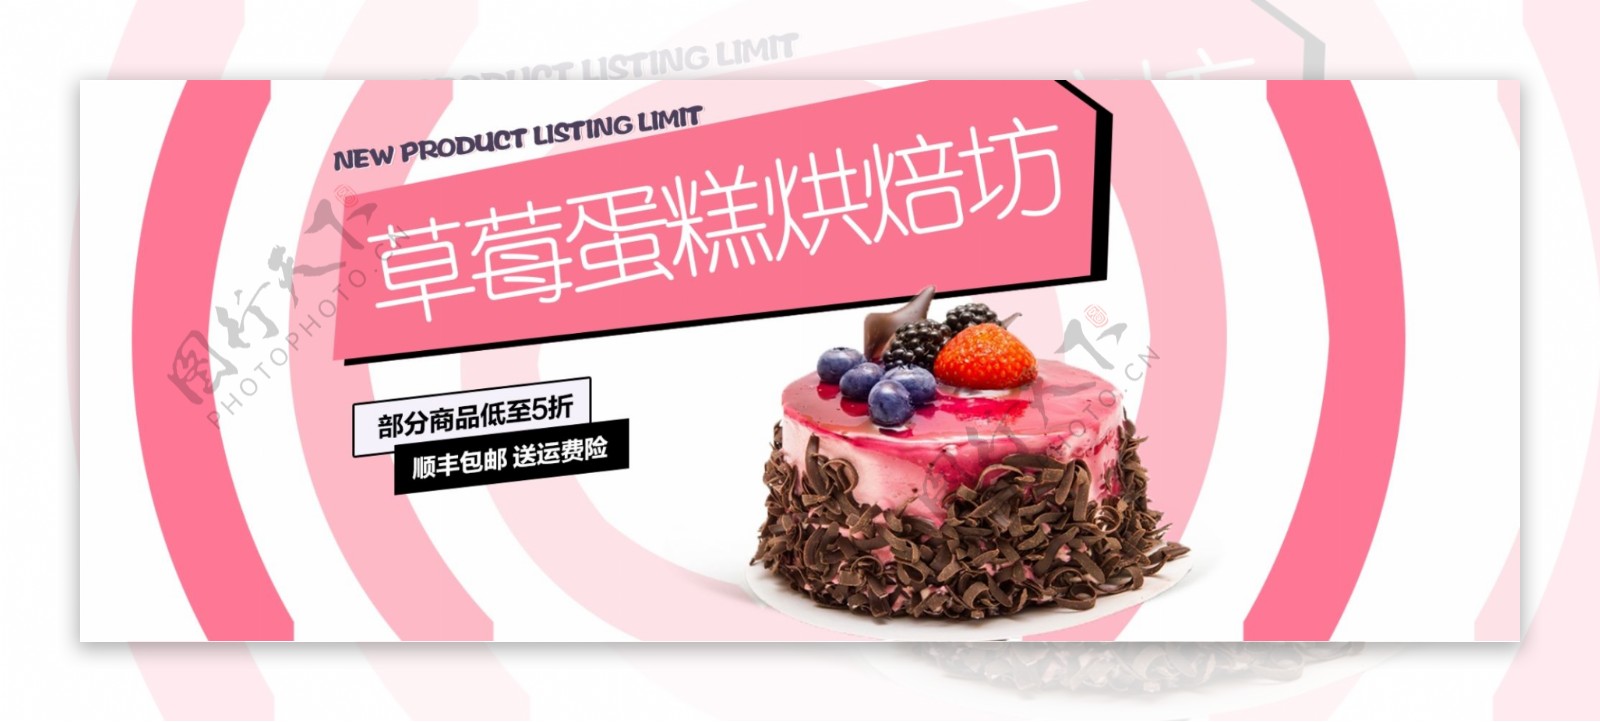 草莓蛋糕促销淘宝banner